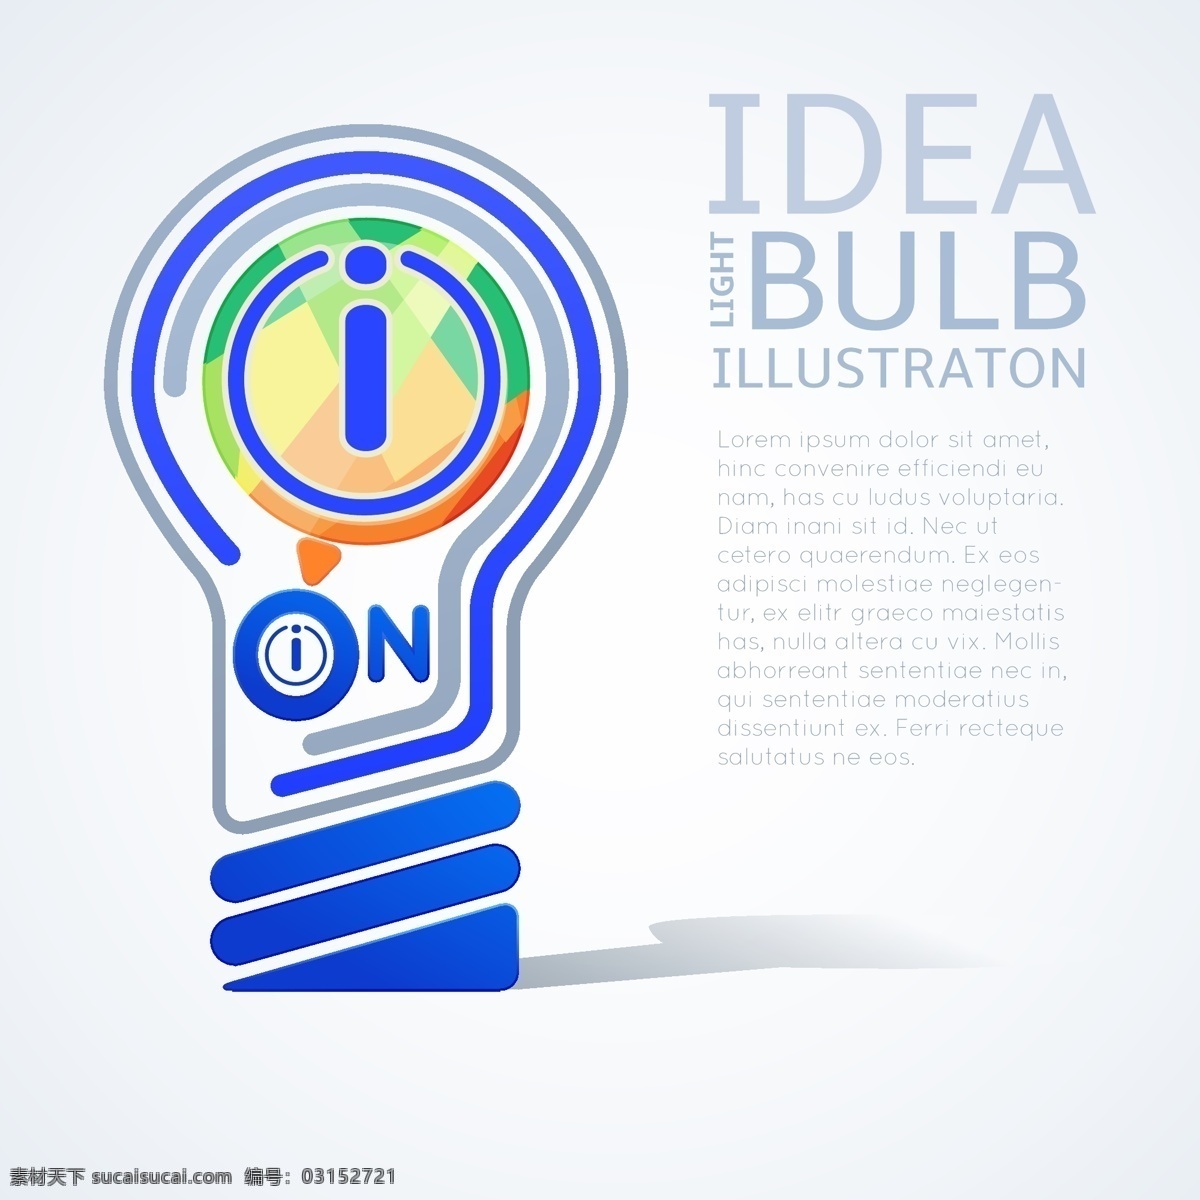 创意 灯泡 开关 创意灯泡 发光的灯泡 头脑风暴 创意图标 创意图片 商务创意 生活百科 矢量素材 白色